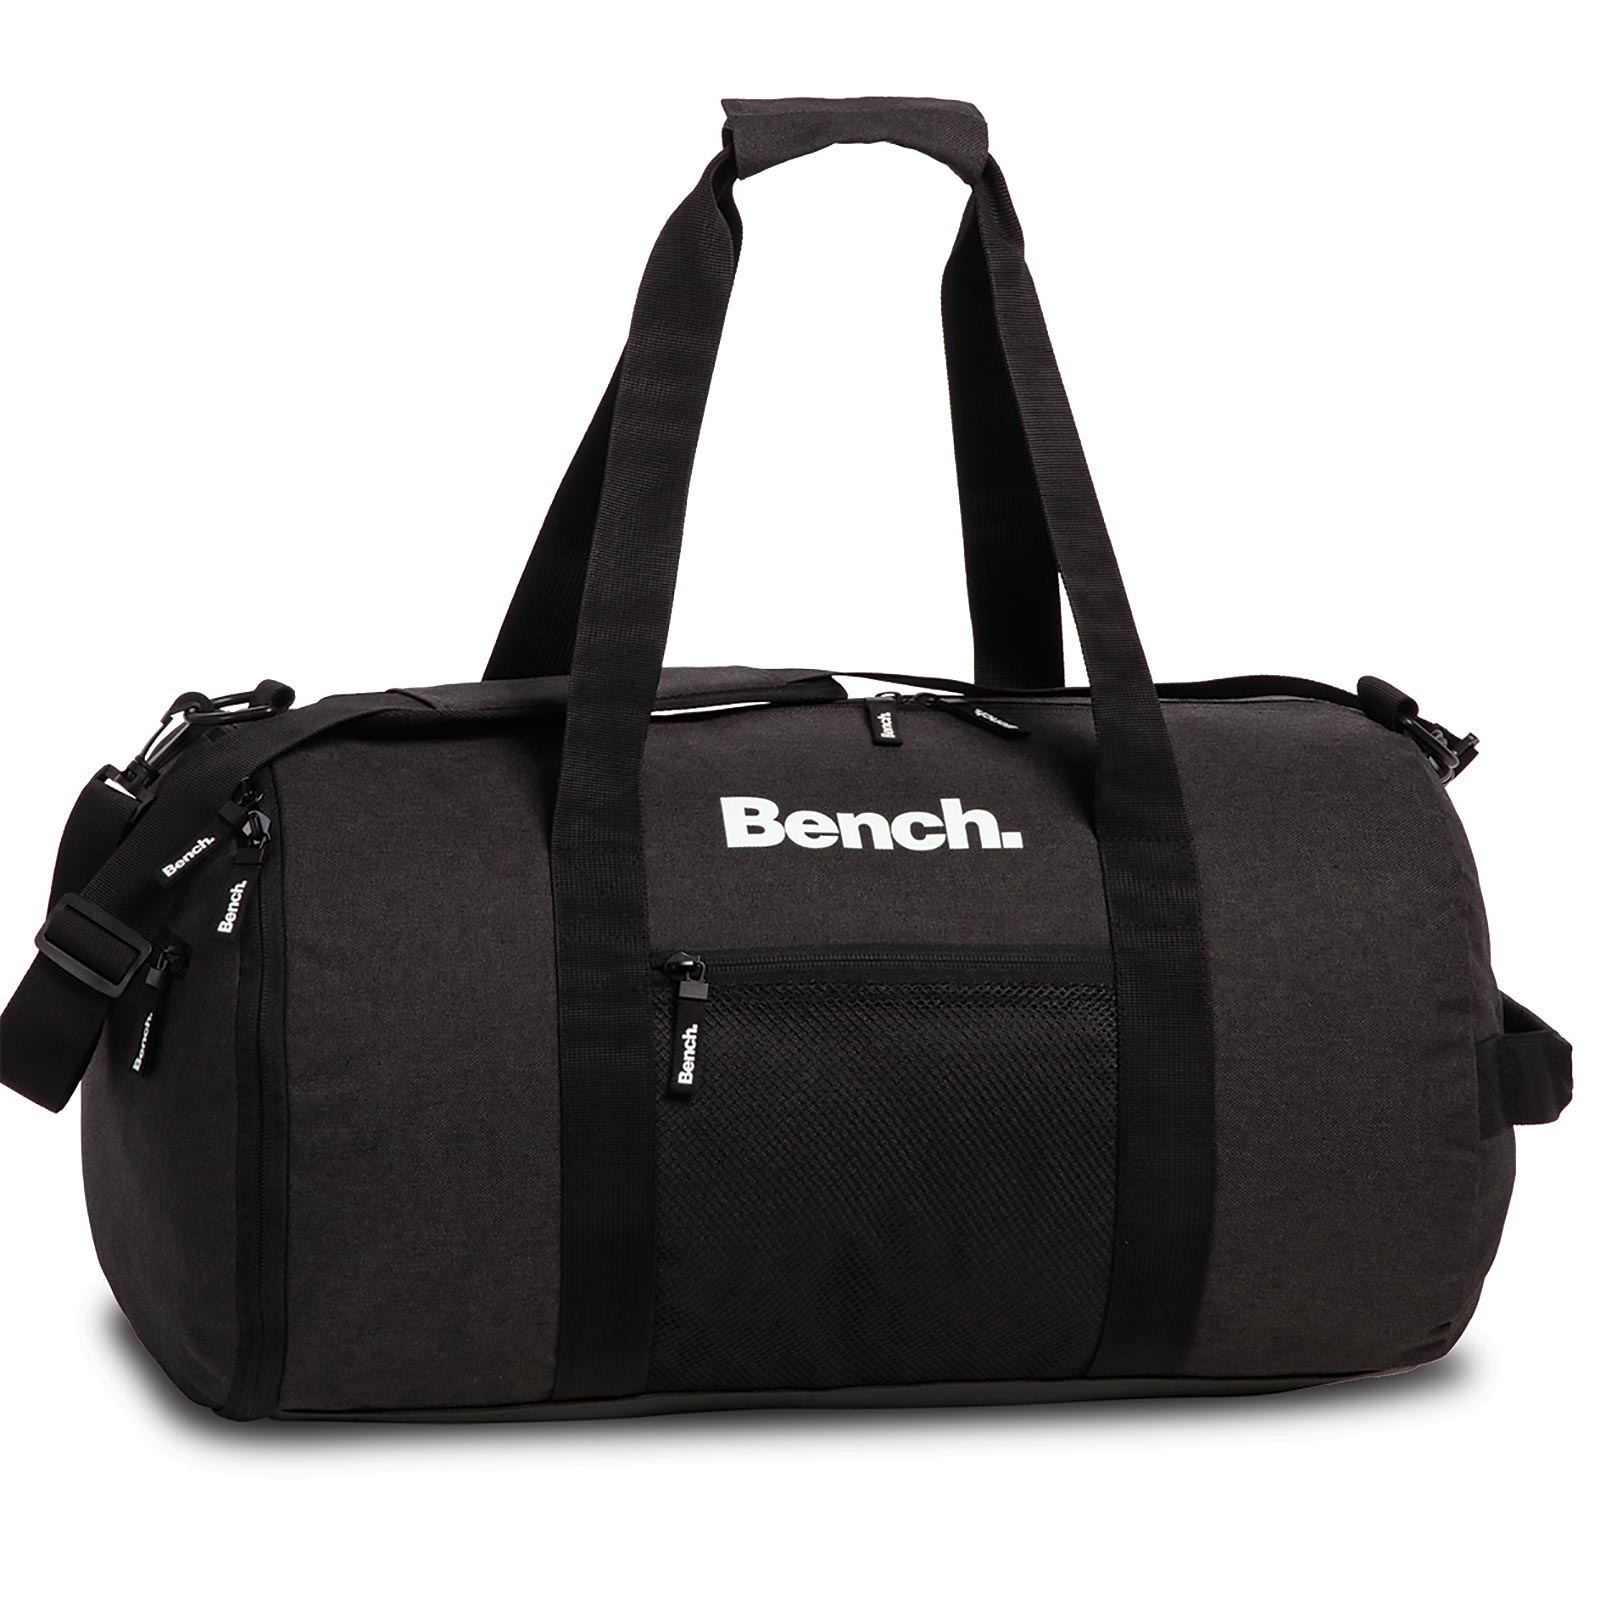 Bench Classic Sporttasche 50 cm günstig kaufen | Koffermarkt